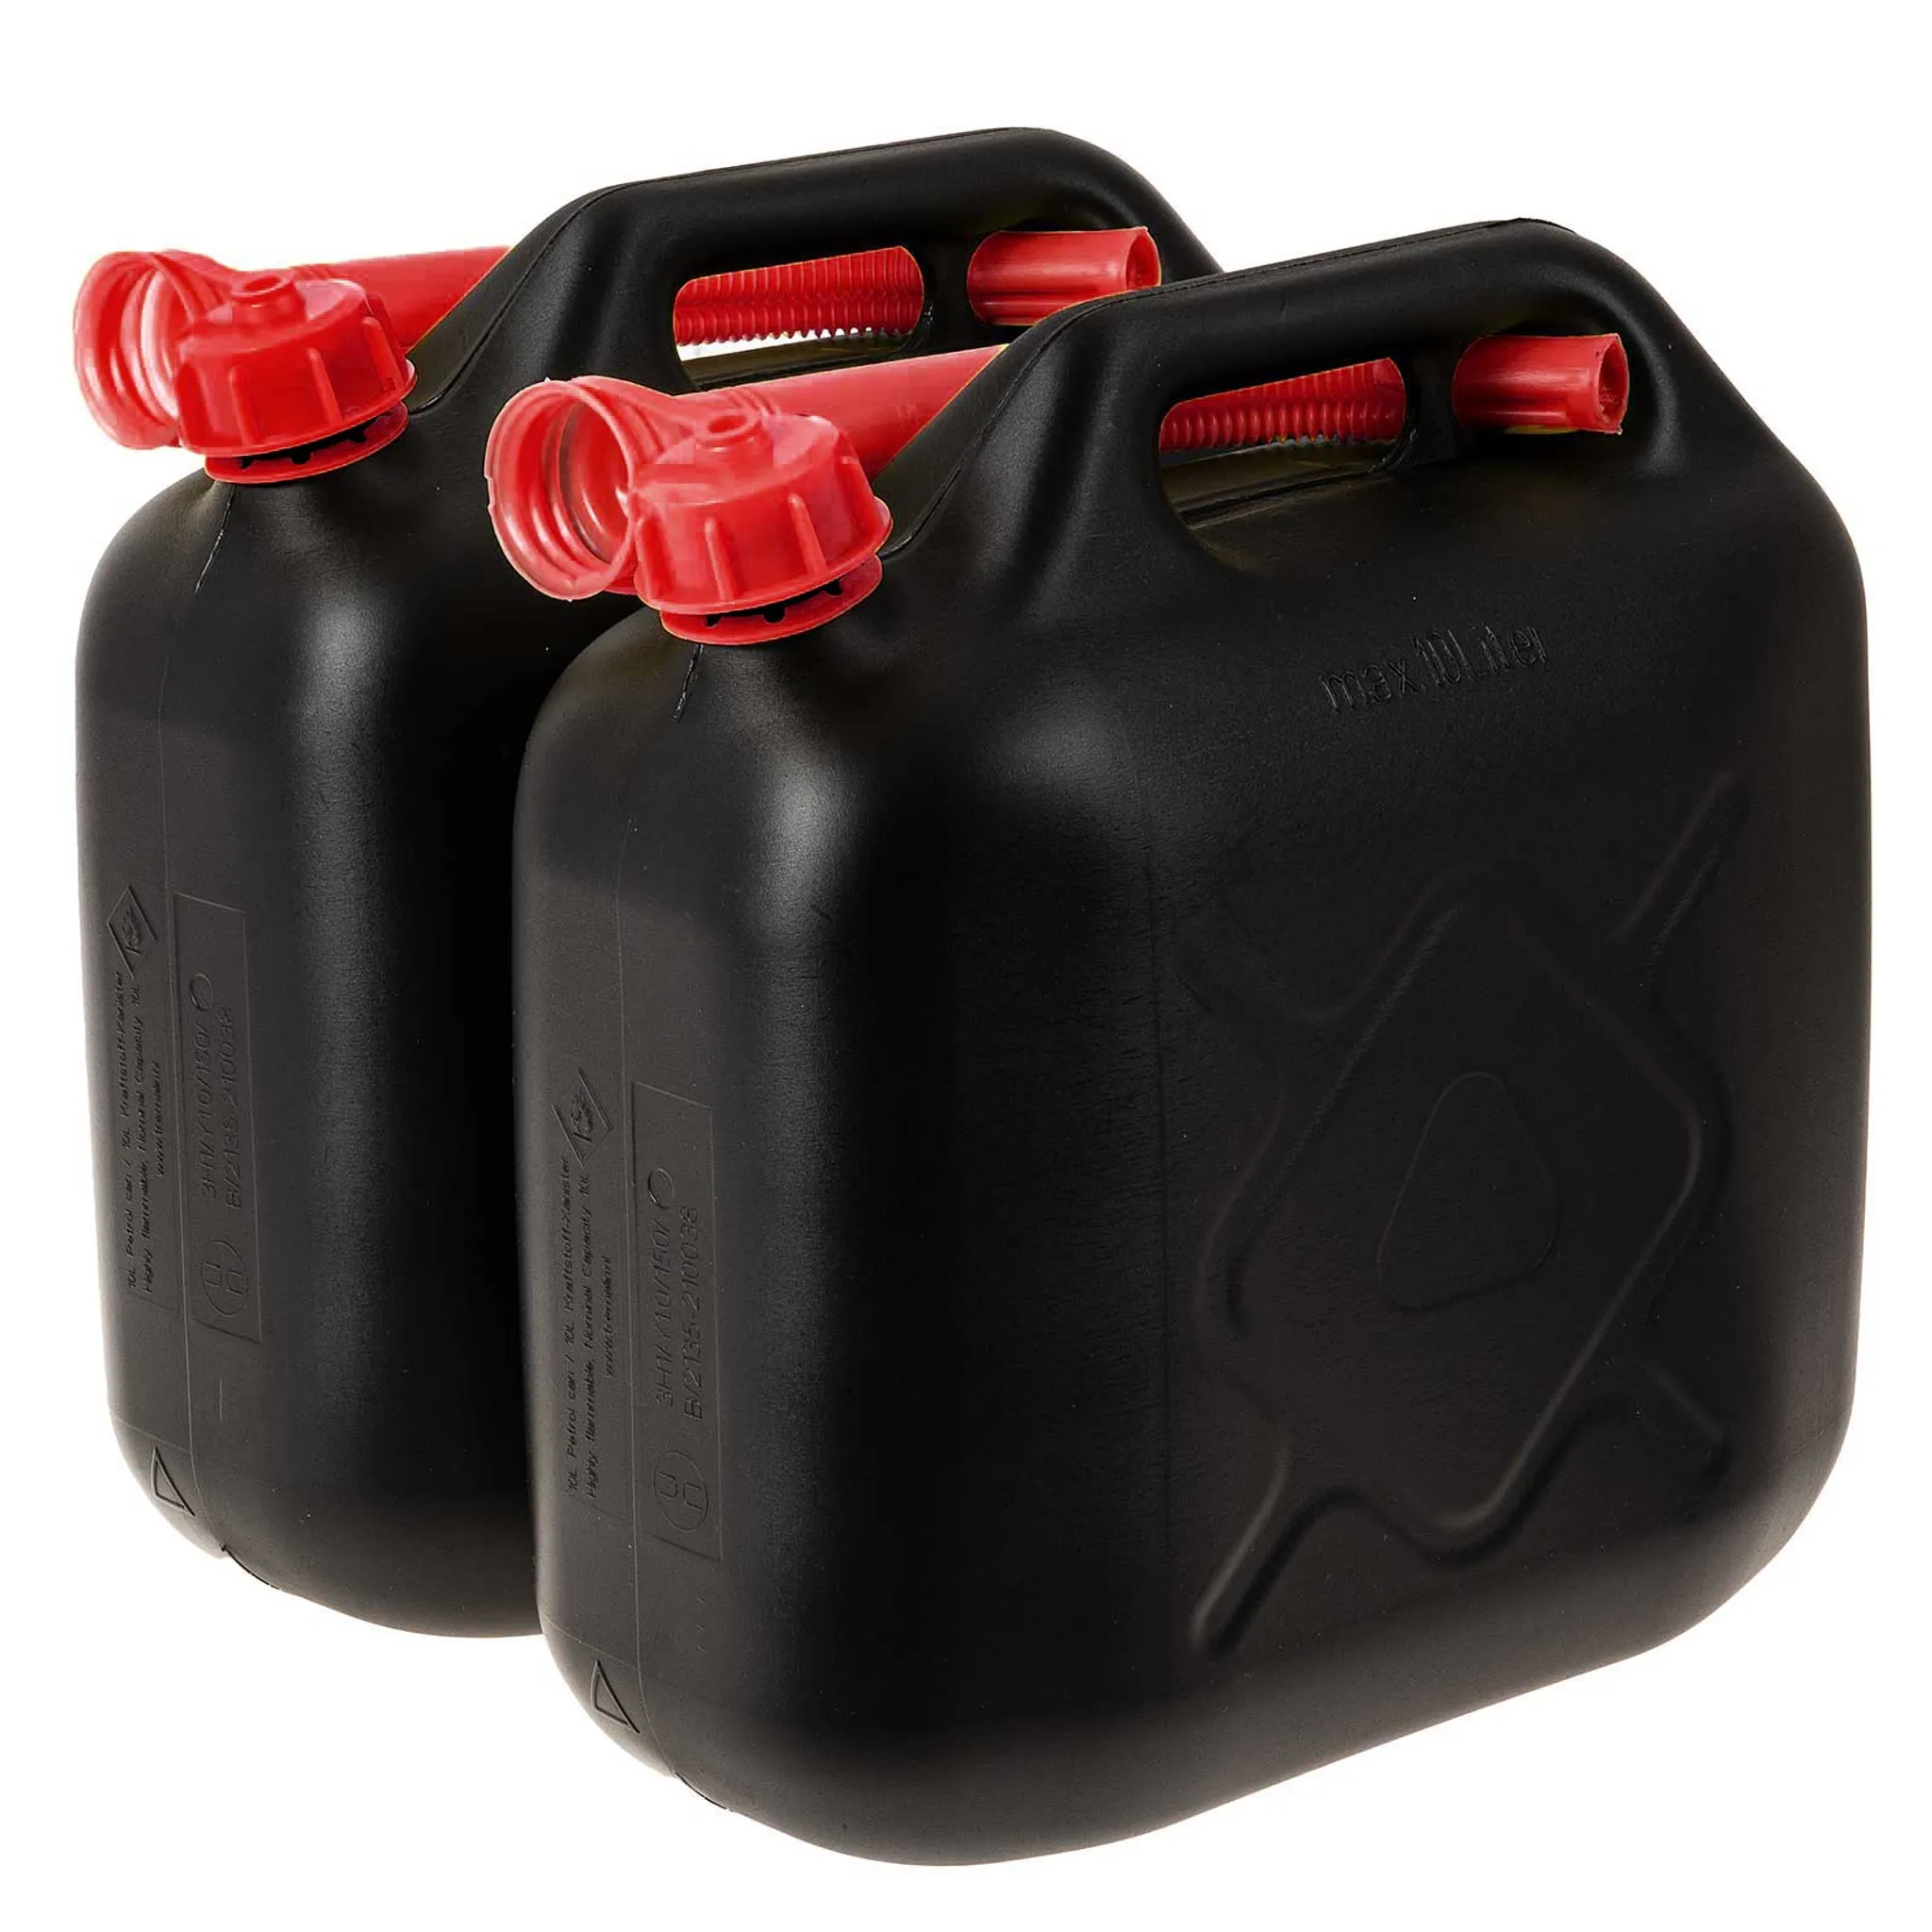 Benzinkanister 10 Liter, Krafstoffkanister UN-geprüft